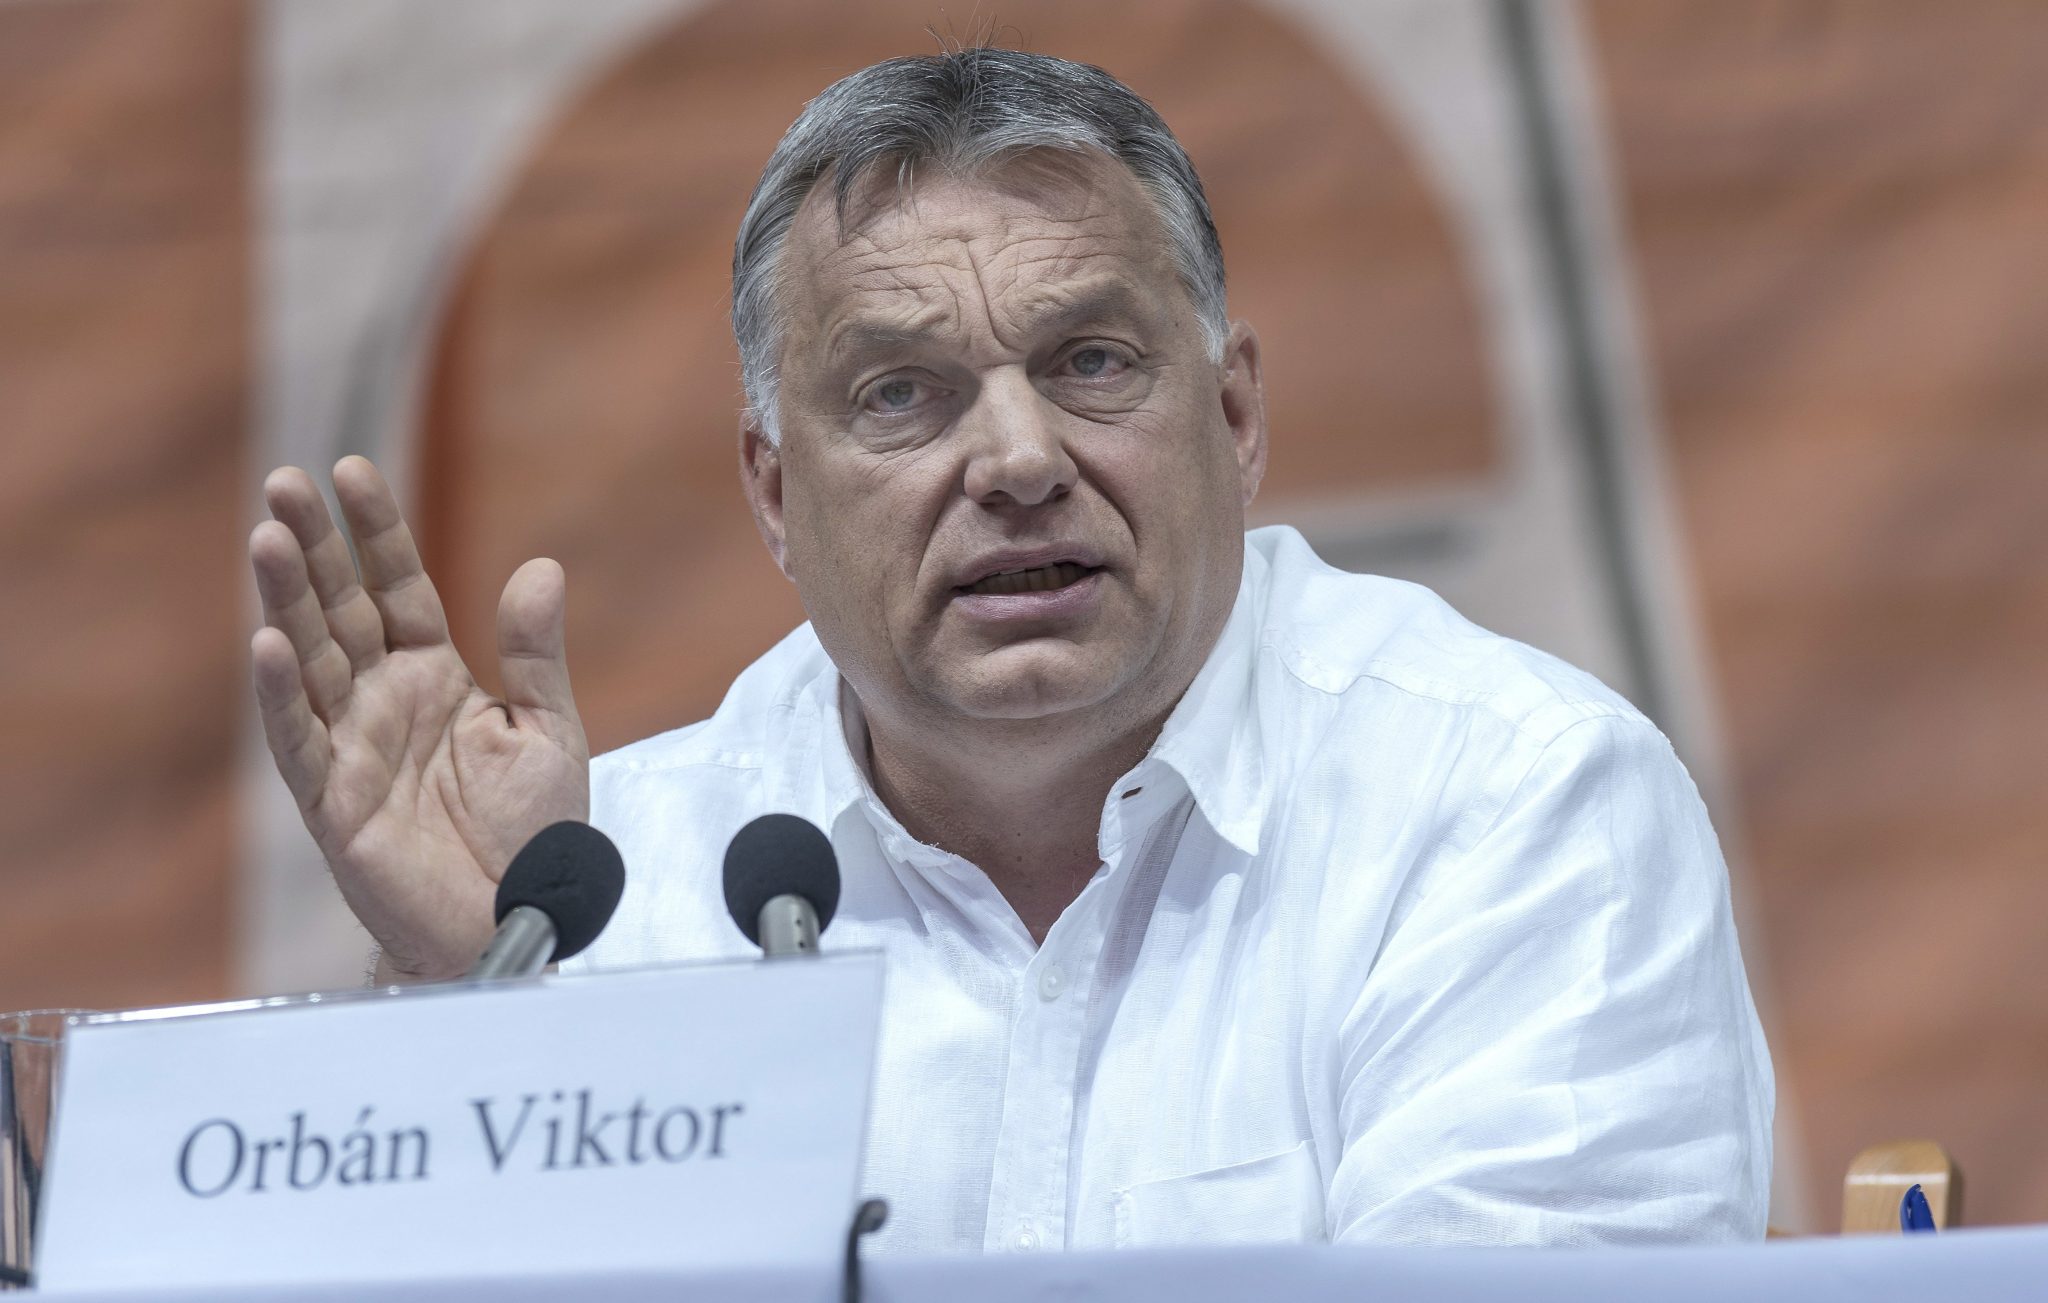 PM ORbán Rumunjska Tusványos